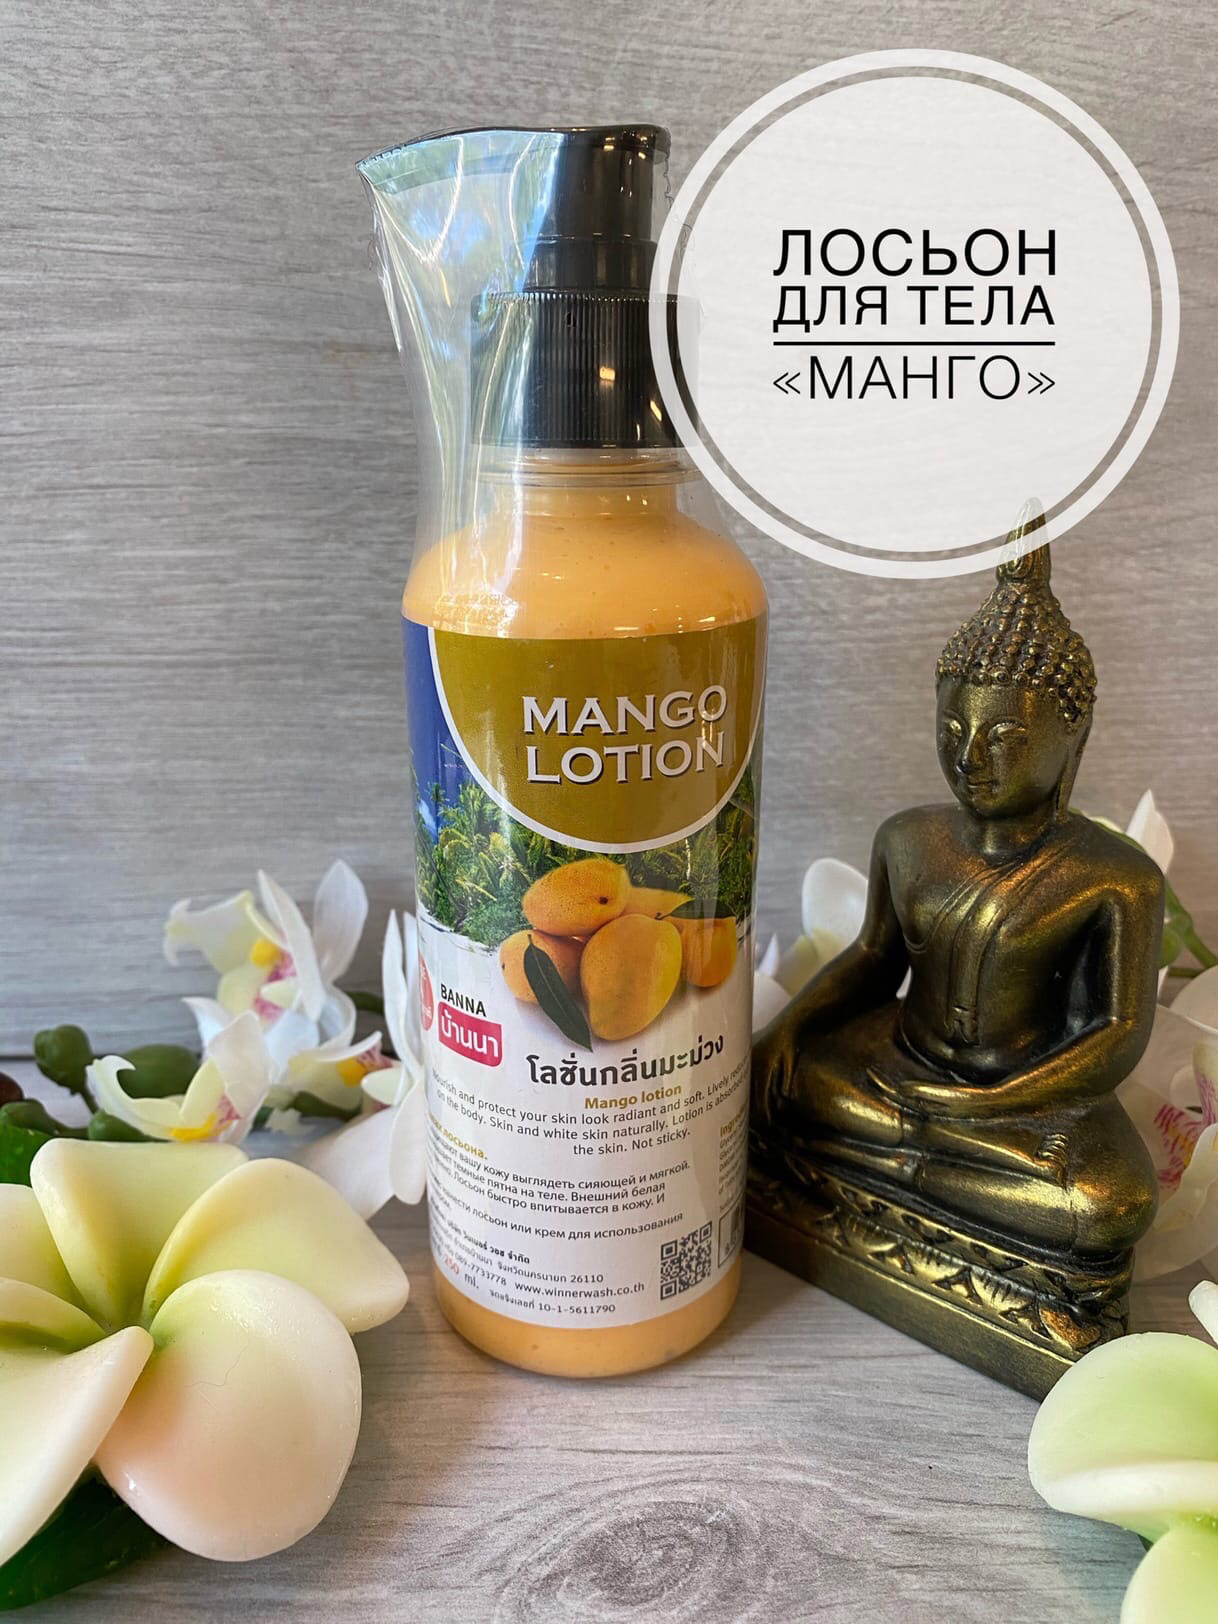 Натуральный лосьон для тела из Тайланда со вкусом Манго BANNA Mango Lotion купить в Москве и Московской области.